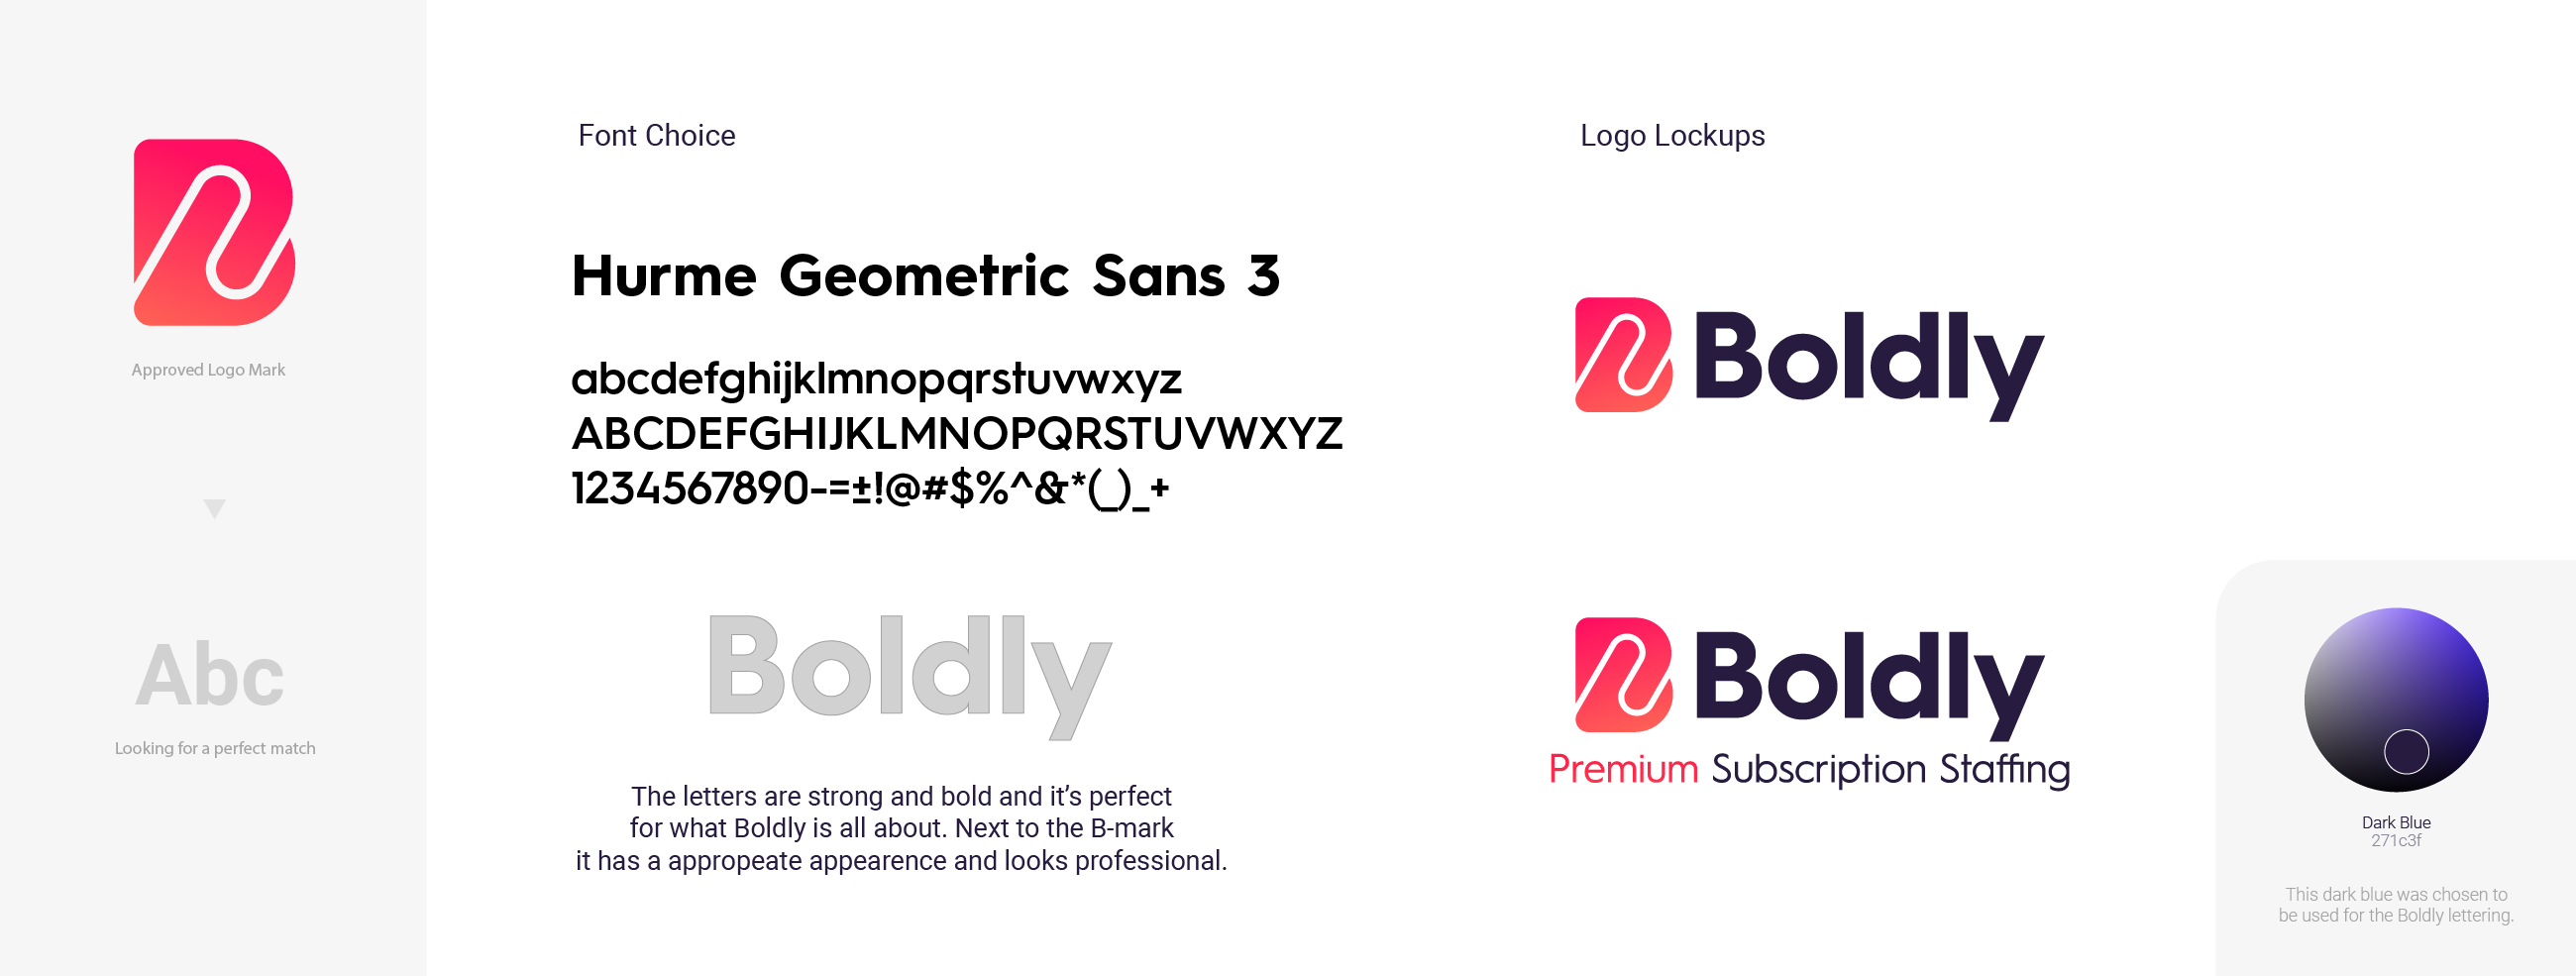 Boldly-Typography